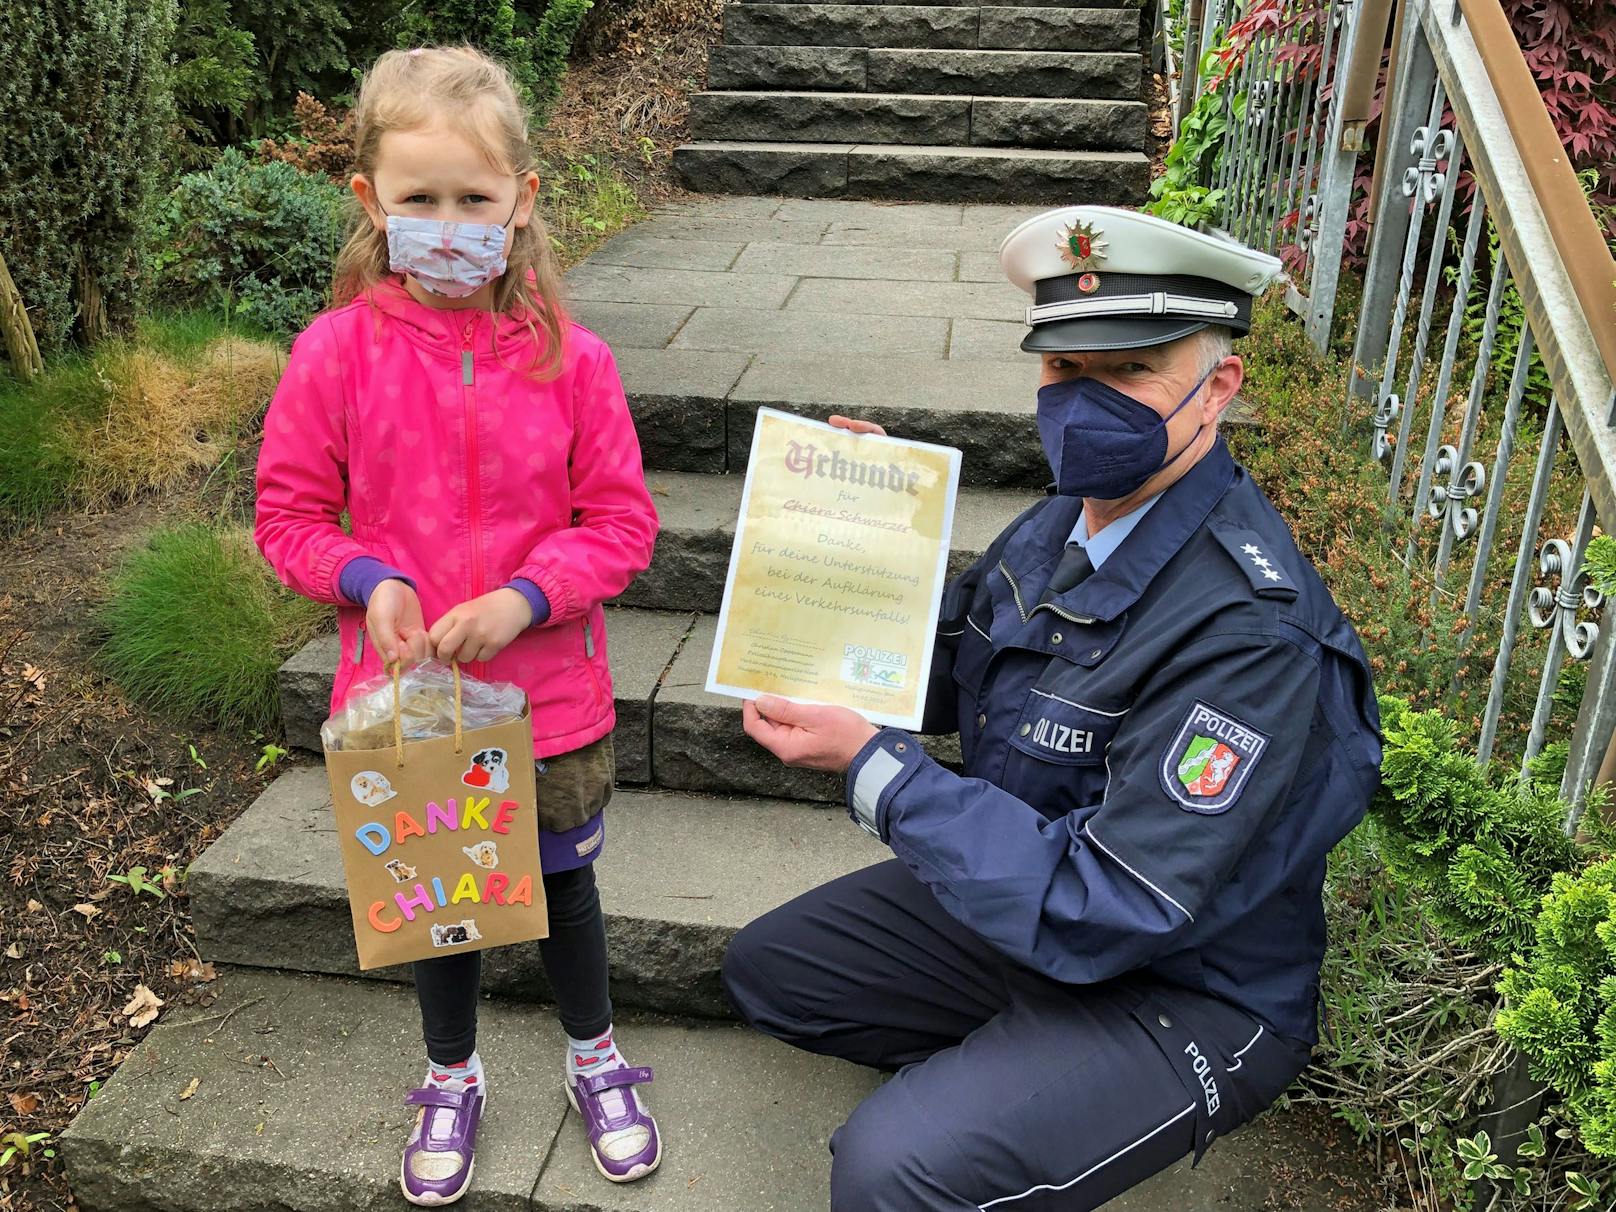 Die Polizei bedankt sich bei der 6-jährigen Chiara für ihr vorbildliches Verhalten.